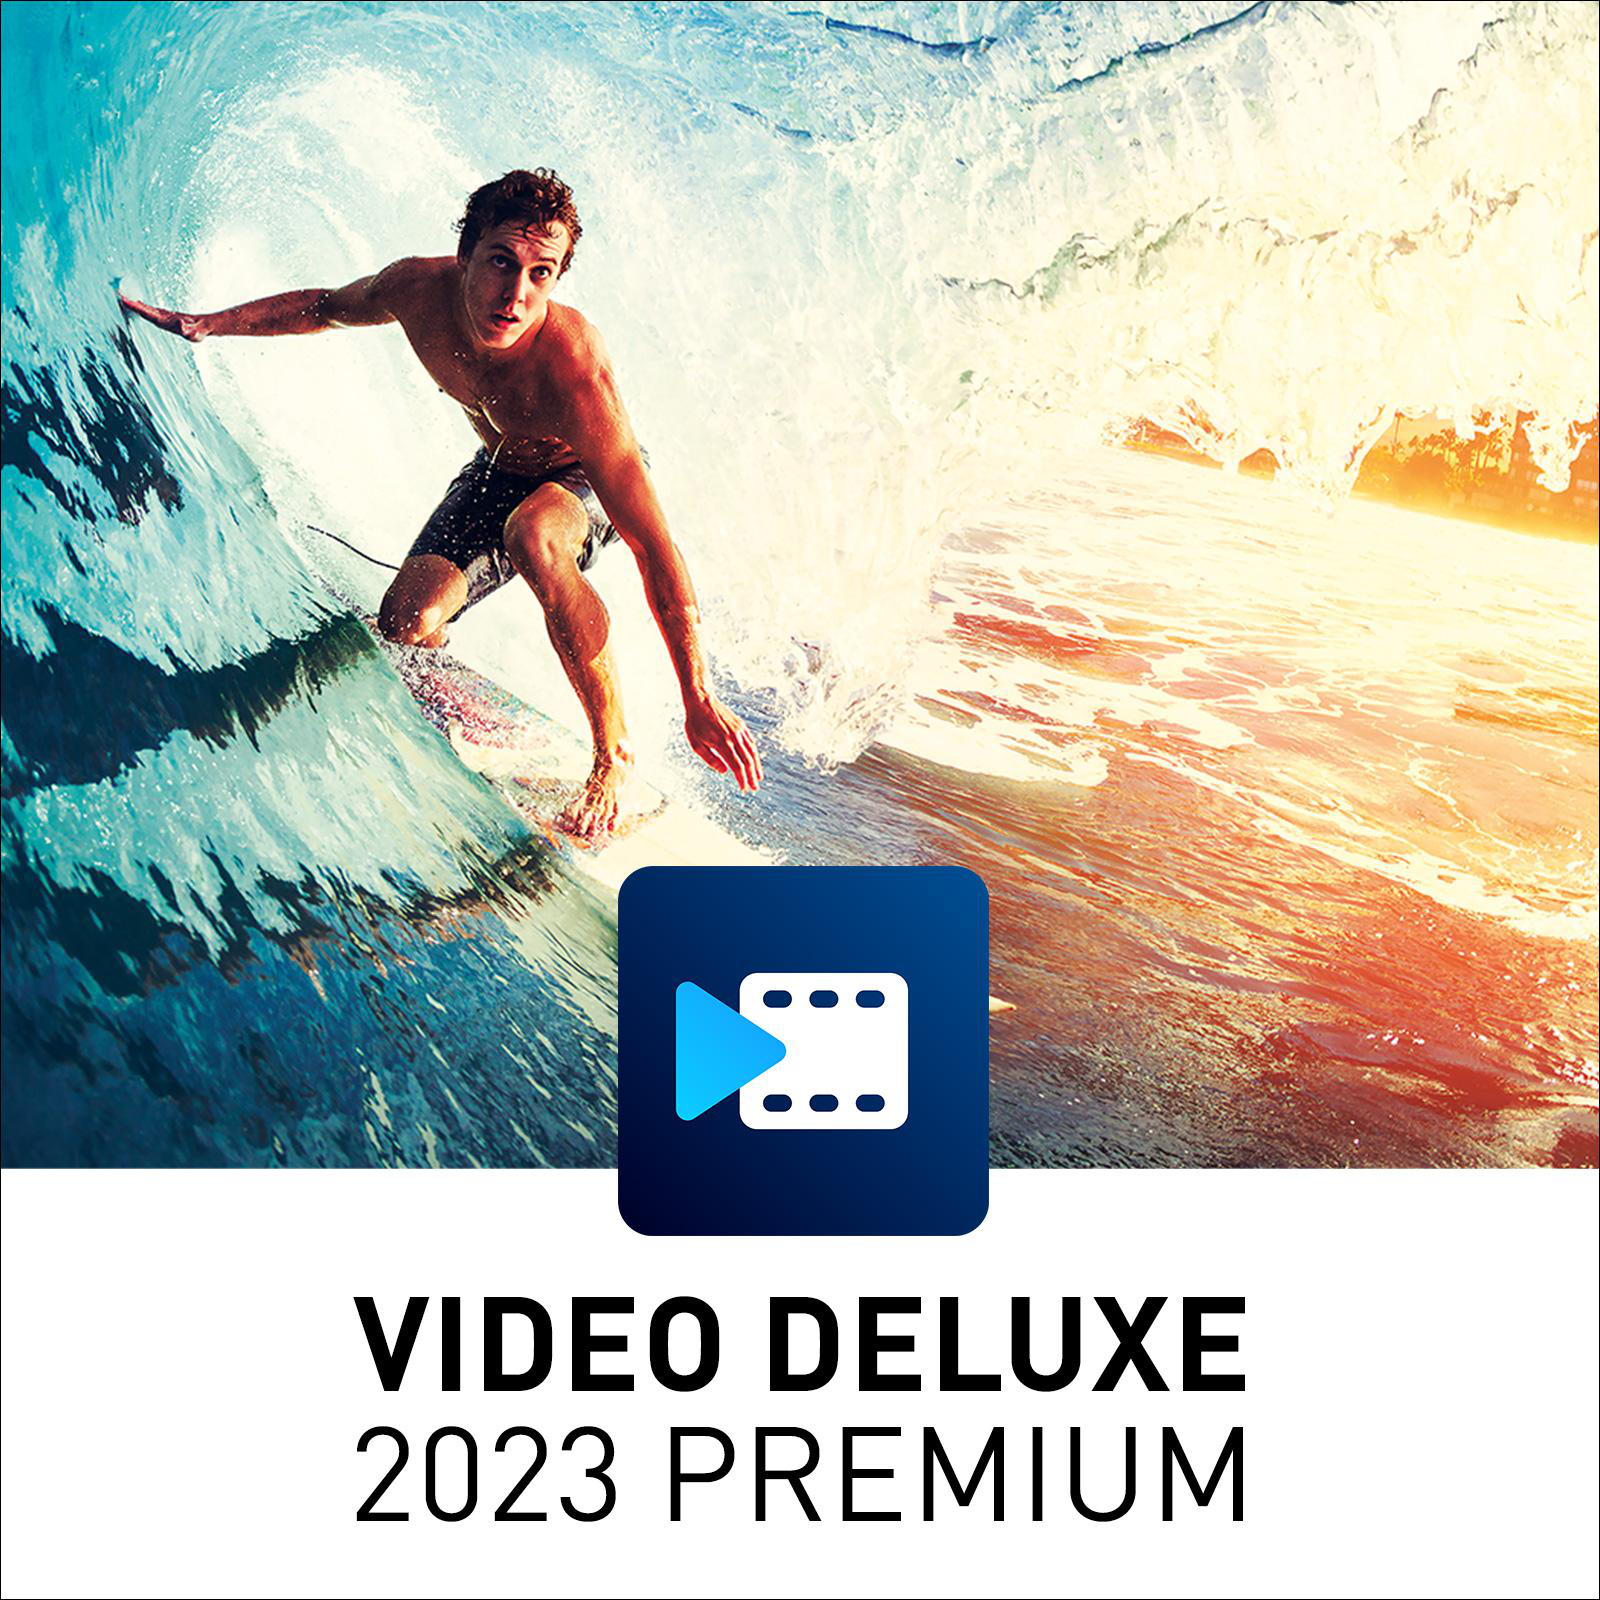 - 2023 PREMIUM [PC] MAGIX DELUXE VIDEO